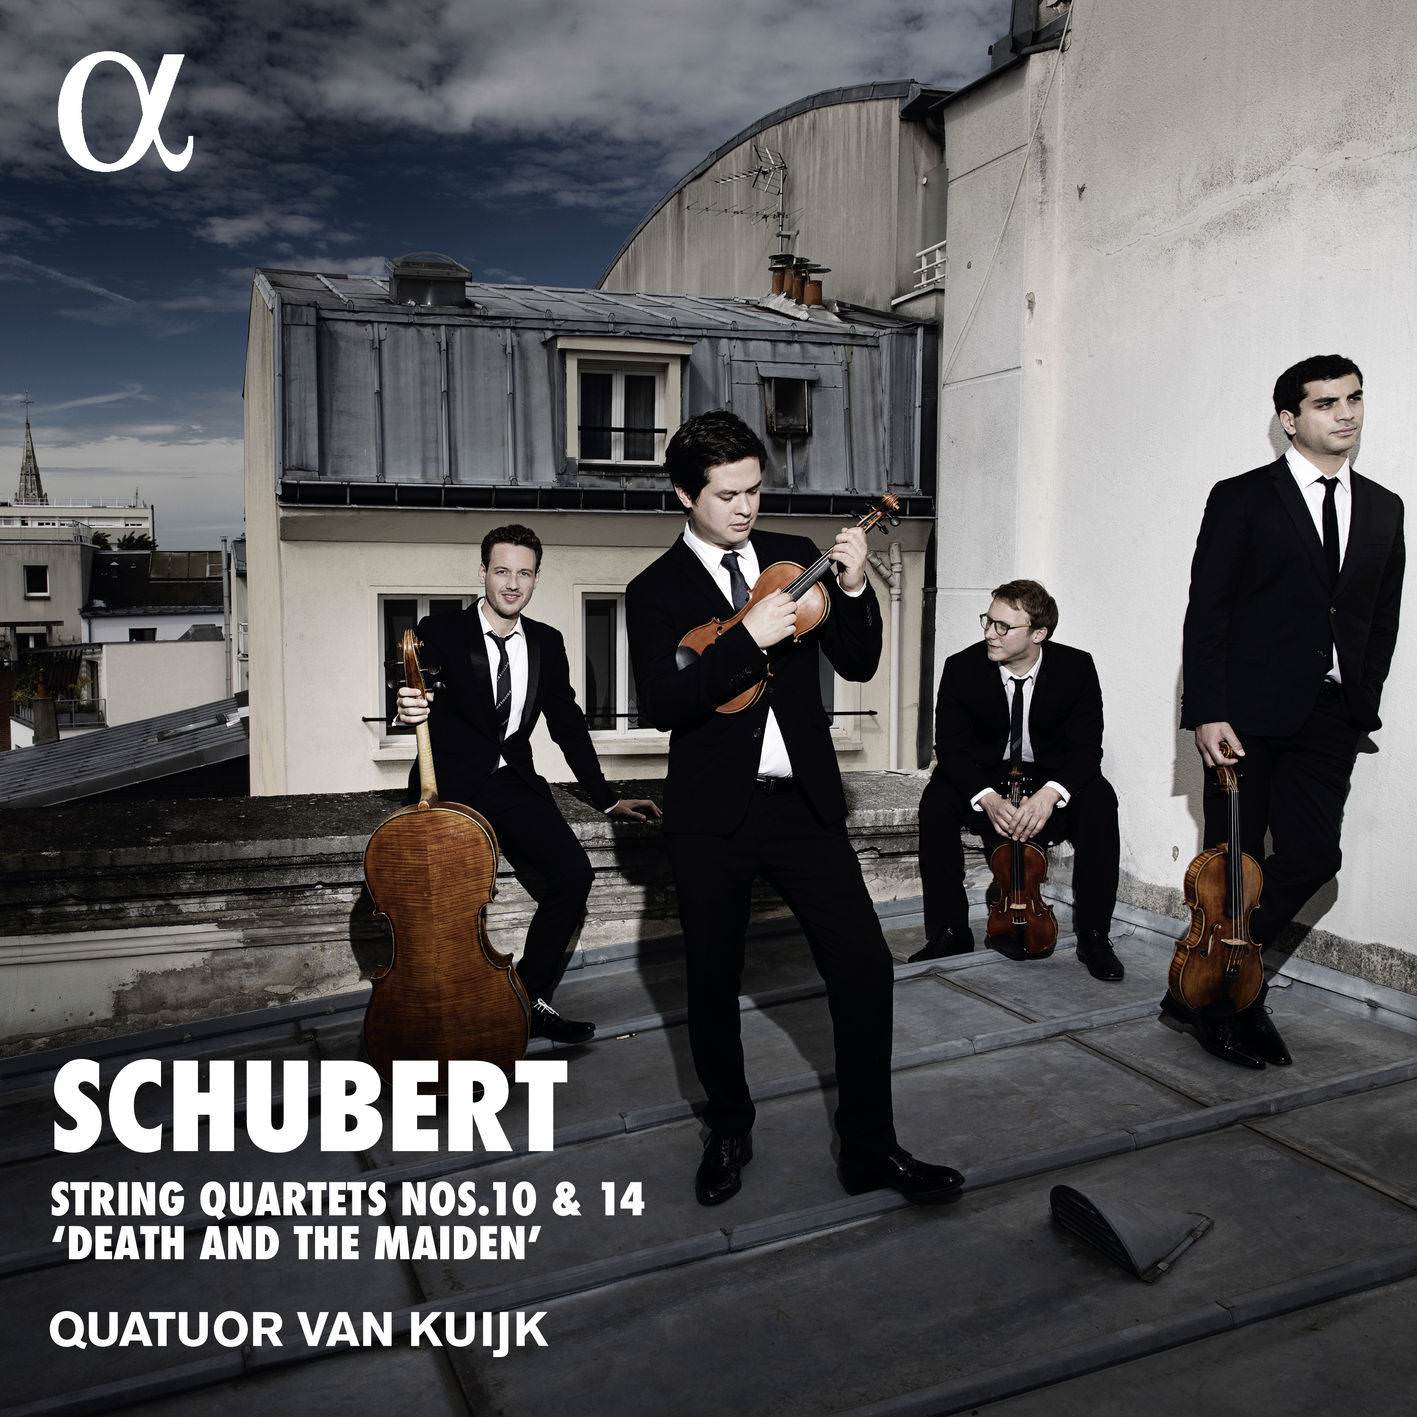 Quatuor Van Kuijk - Schubert: Quartets Nos. 10 & 14 "Death and the Maiden" (2018) [FLAC 24bit/192kHz]